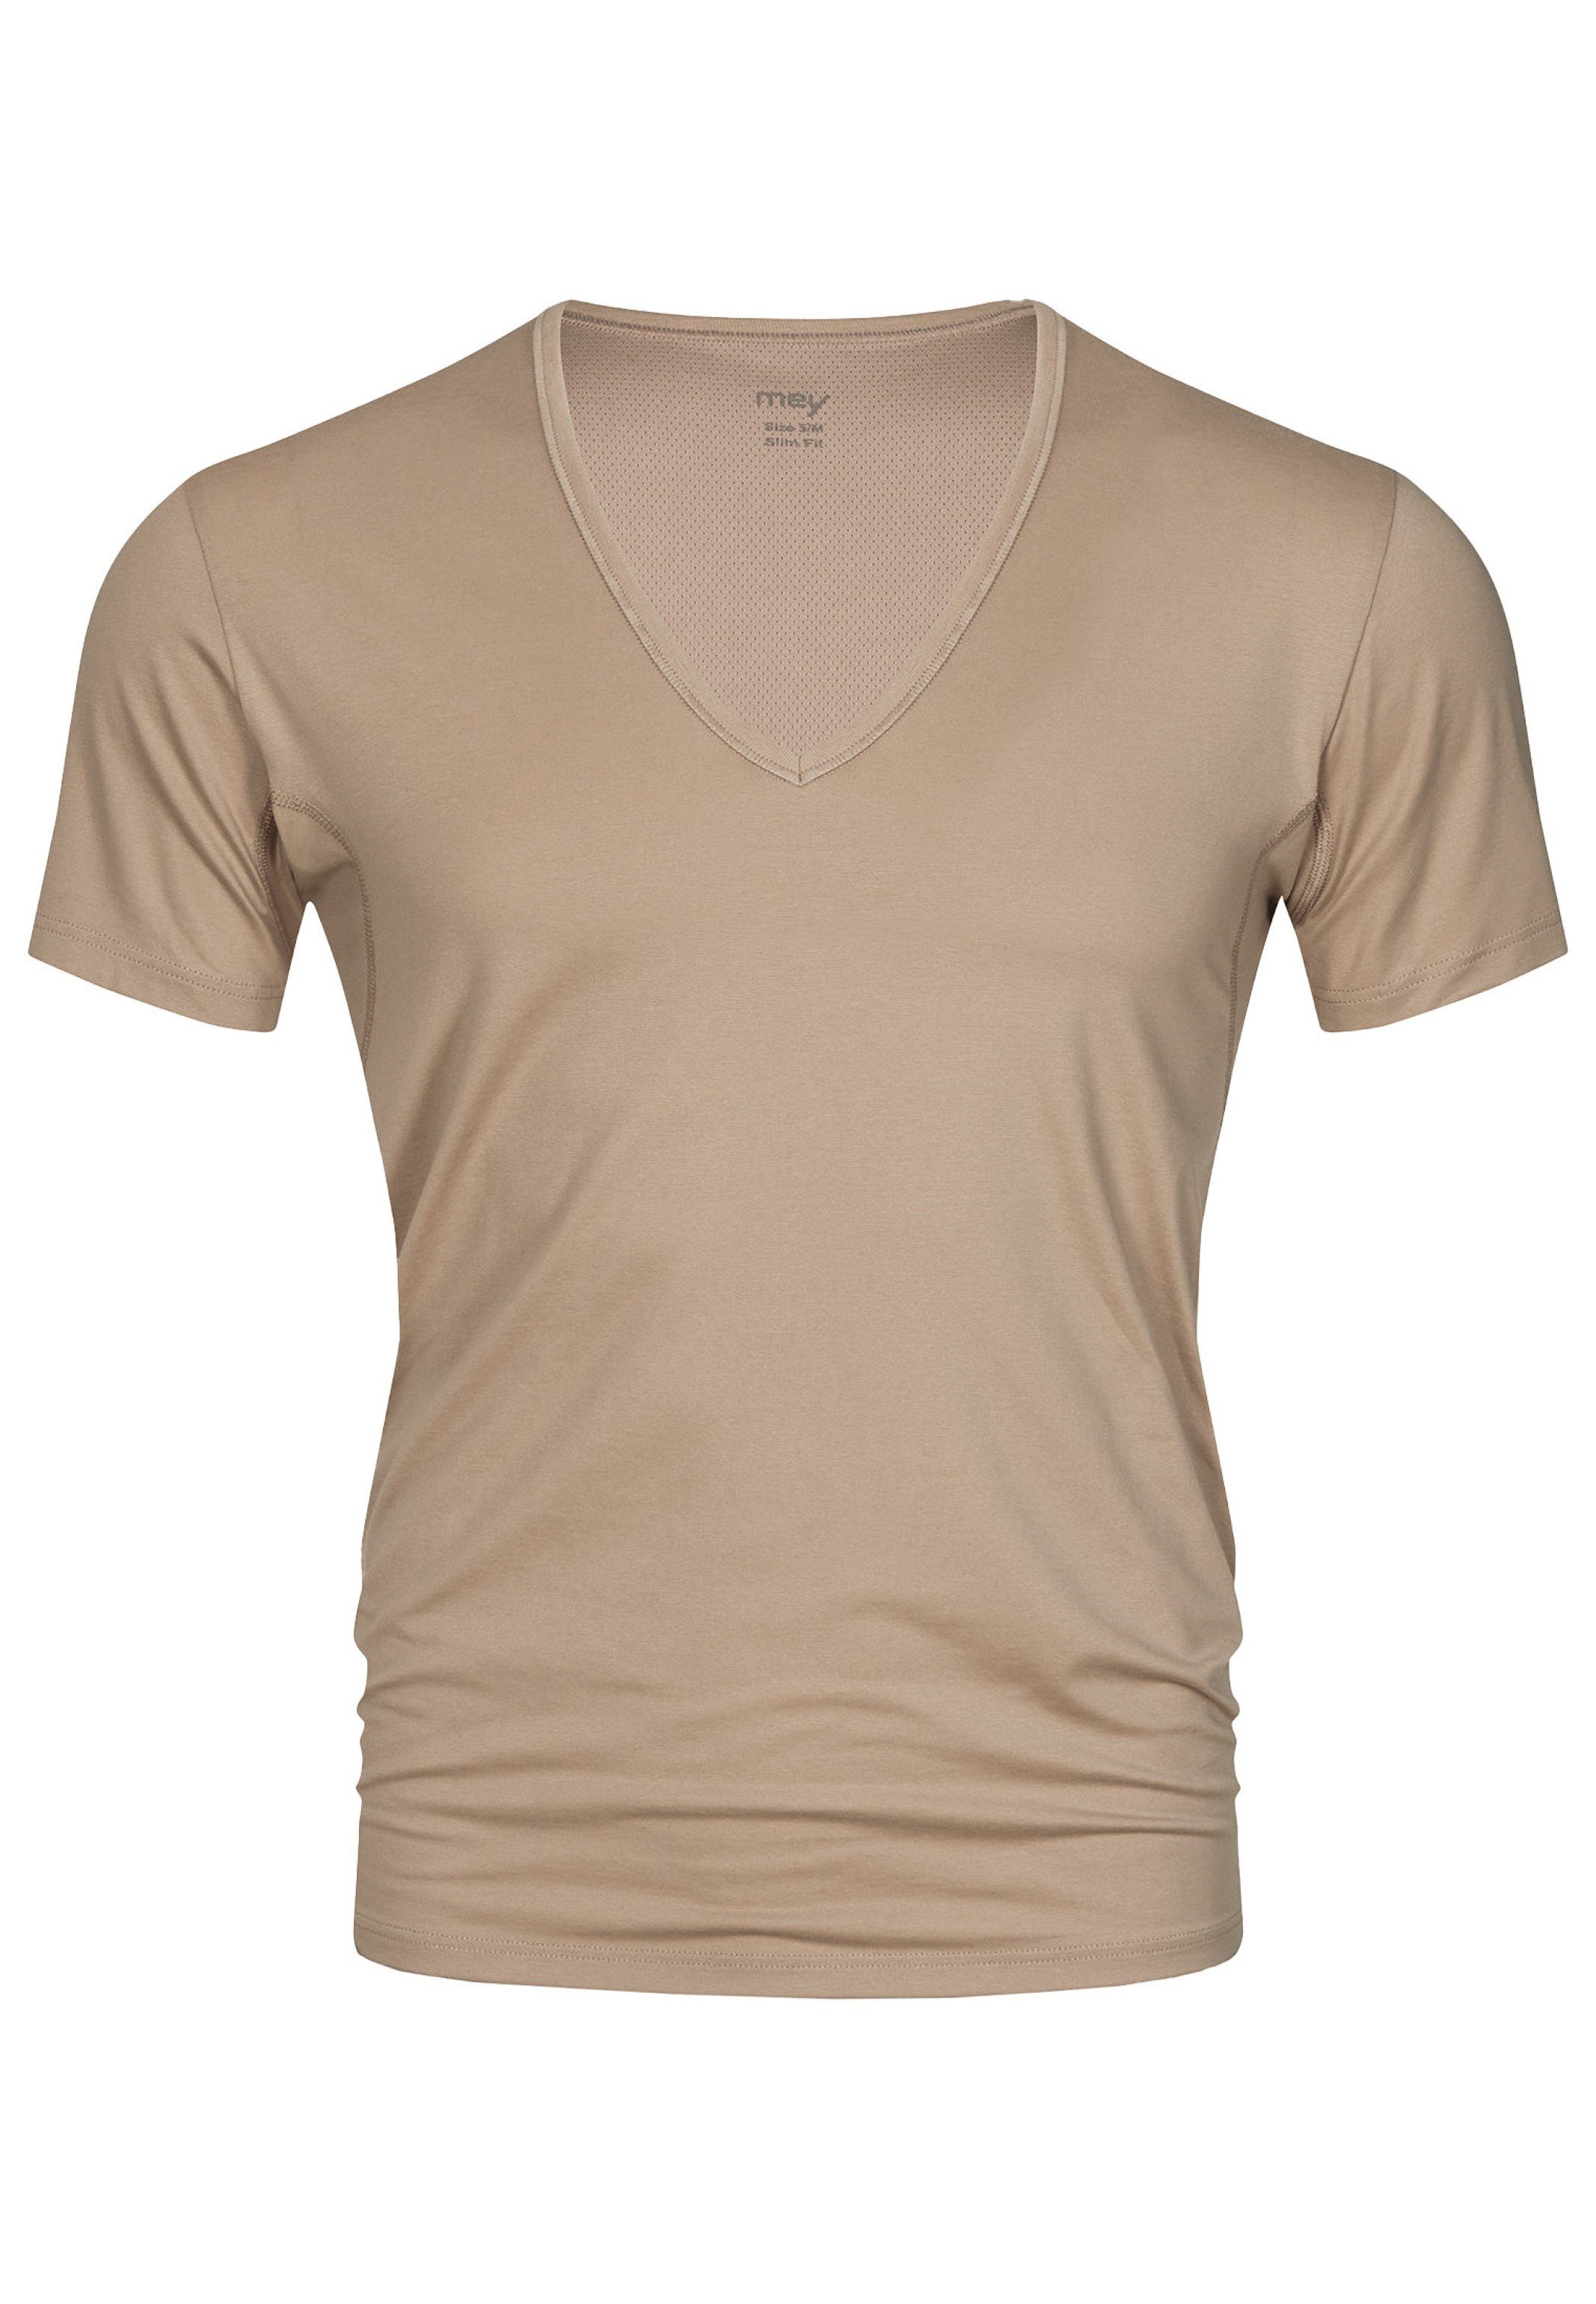 (1-St) Mey Thermoregulierend Light-Beige Unterhemd Shirt Cotton Baumwolle / Kurzarm Unterhemd - Dry -